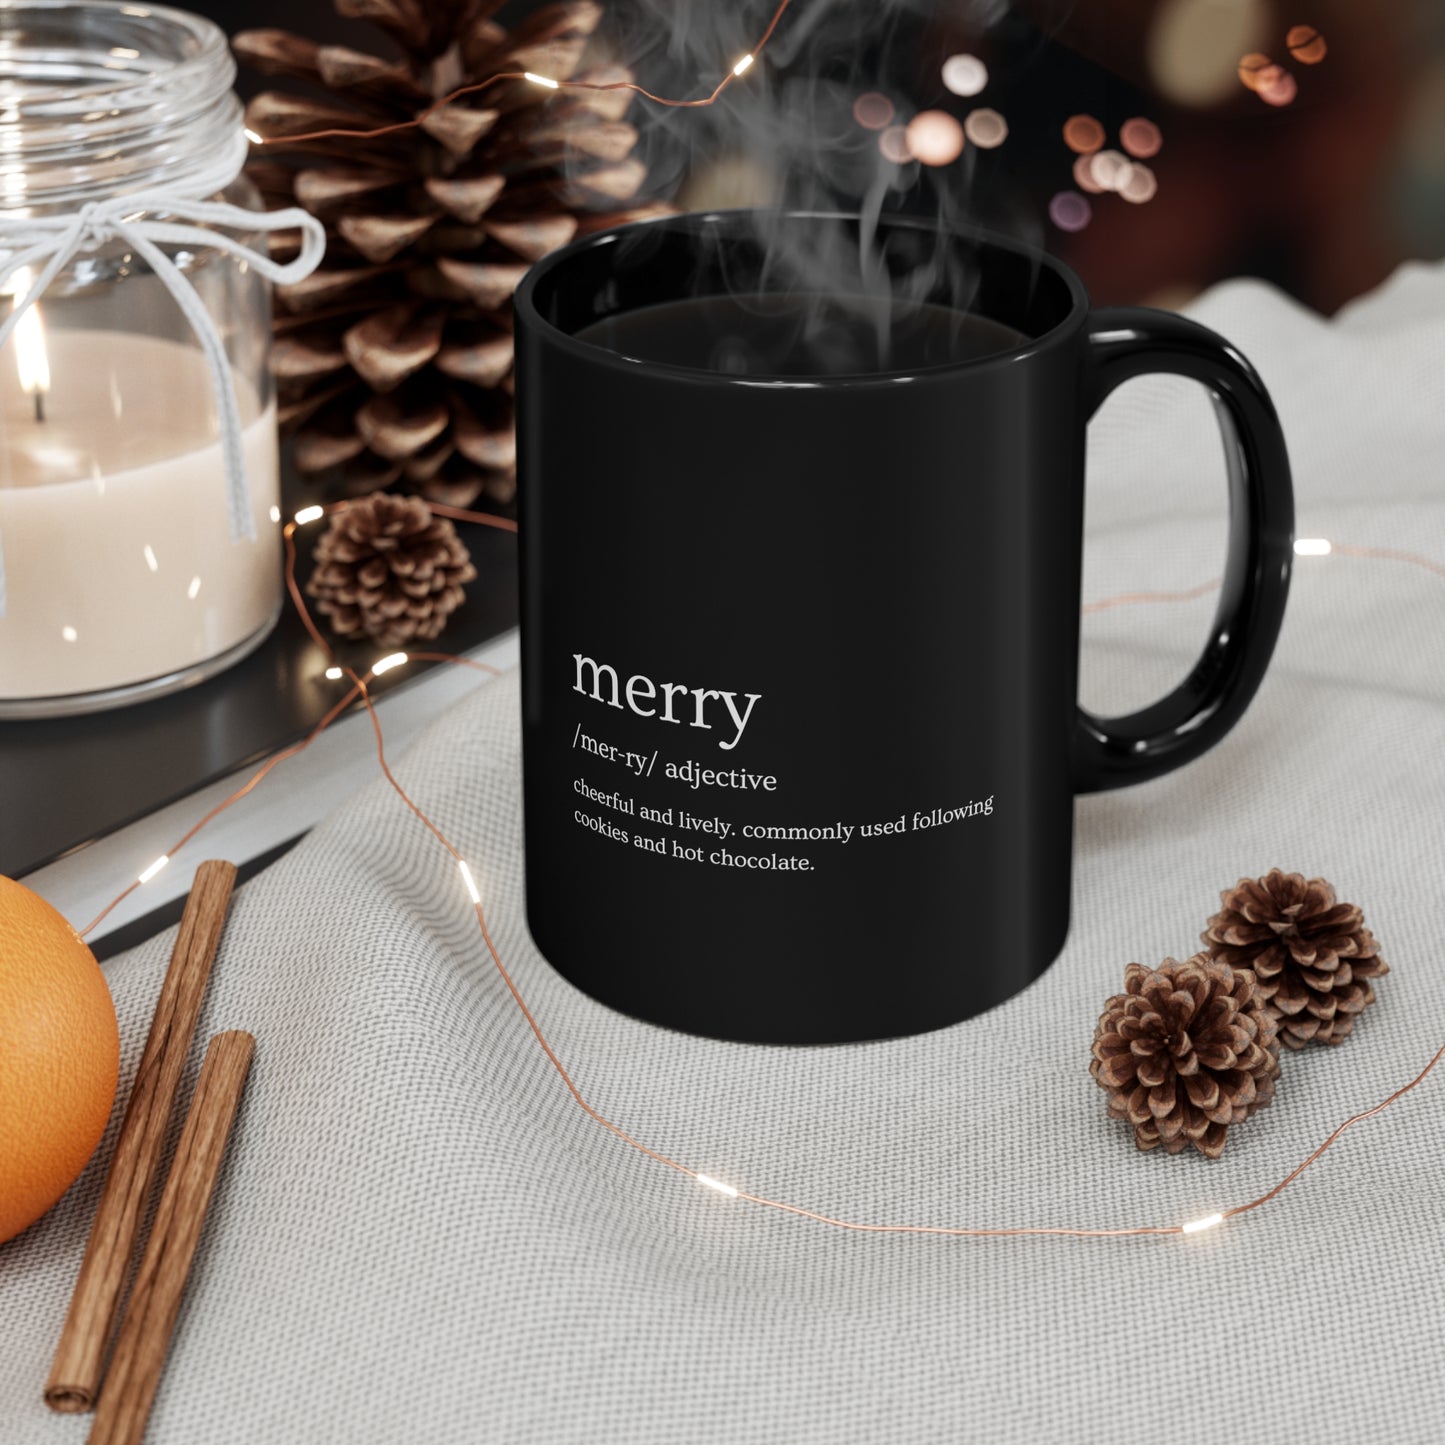 Merry Christmas and Holiday Black Mug